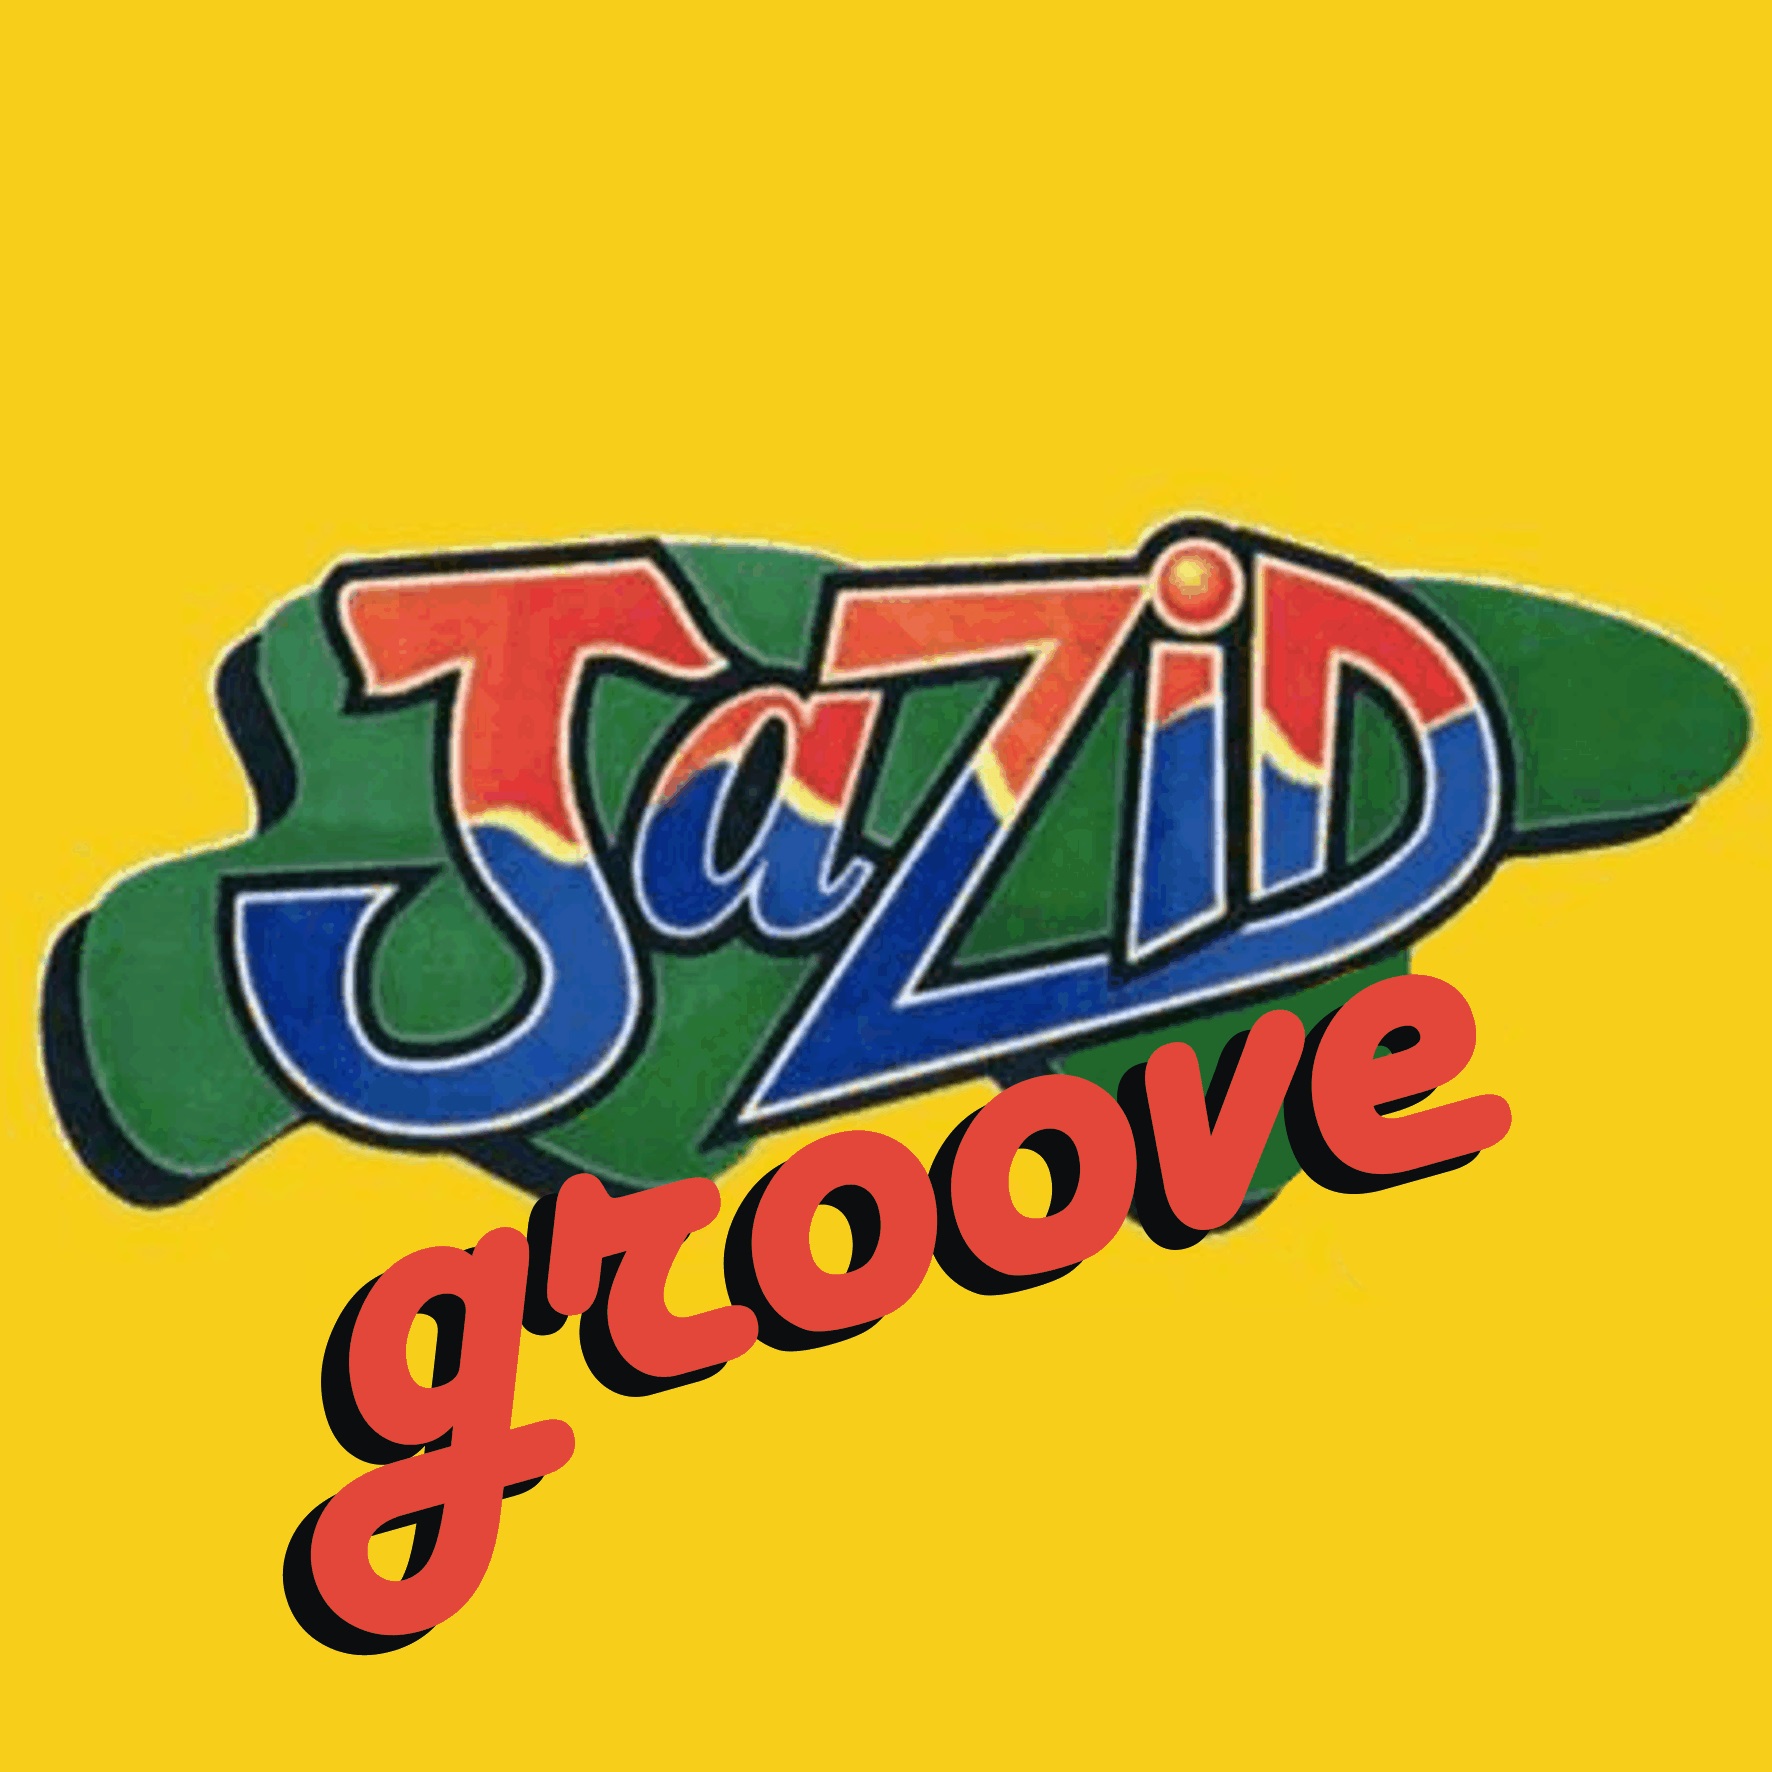 Jazid Groove 35